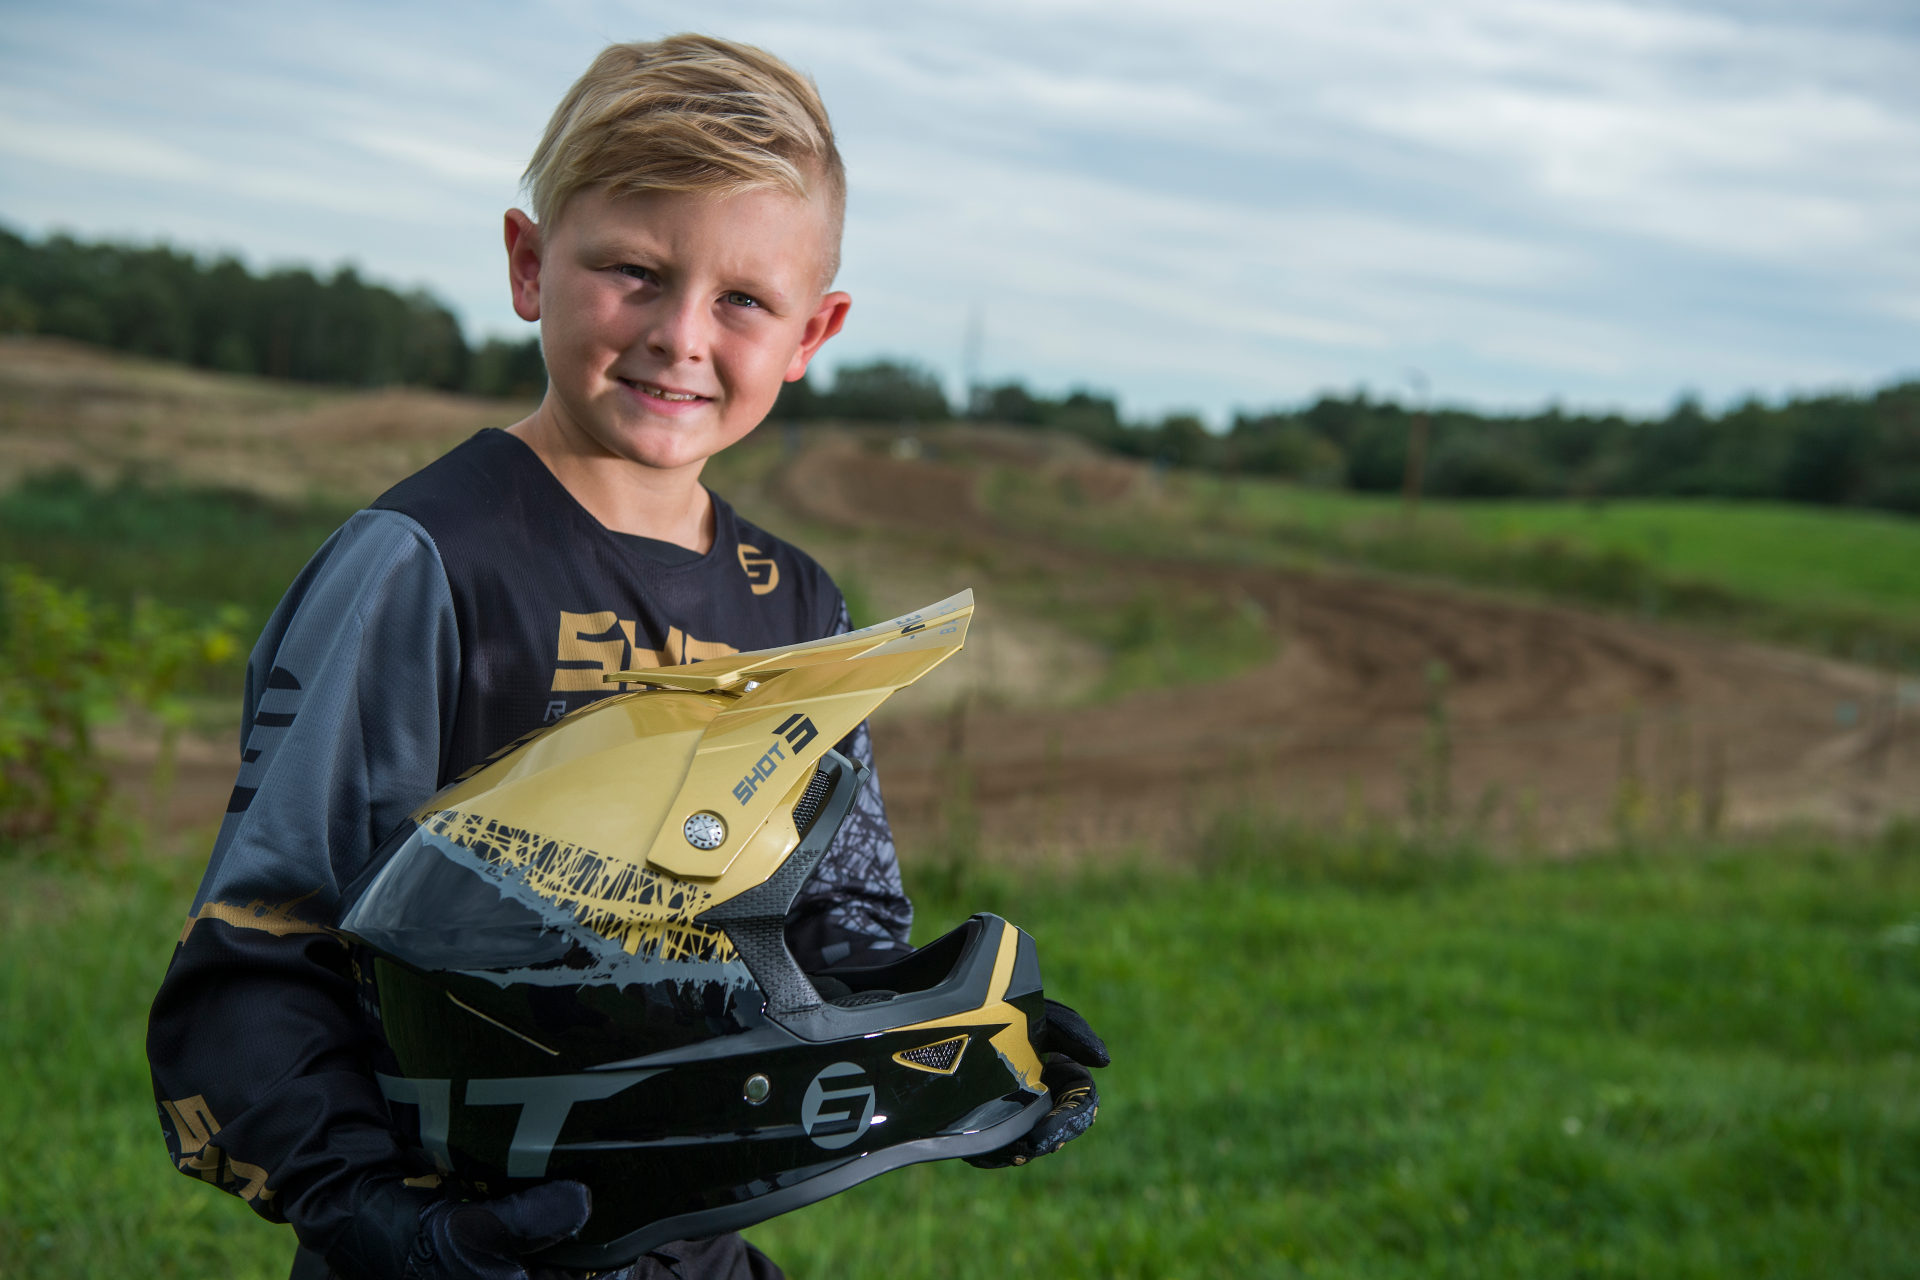 Motocross niños: claves empezar en total seguridad